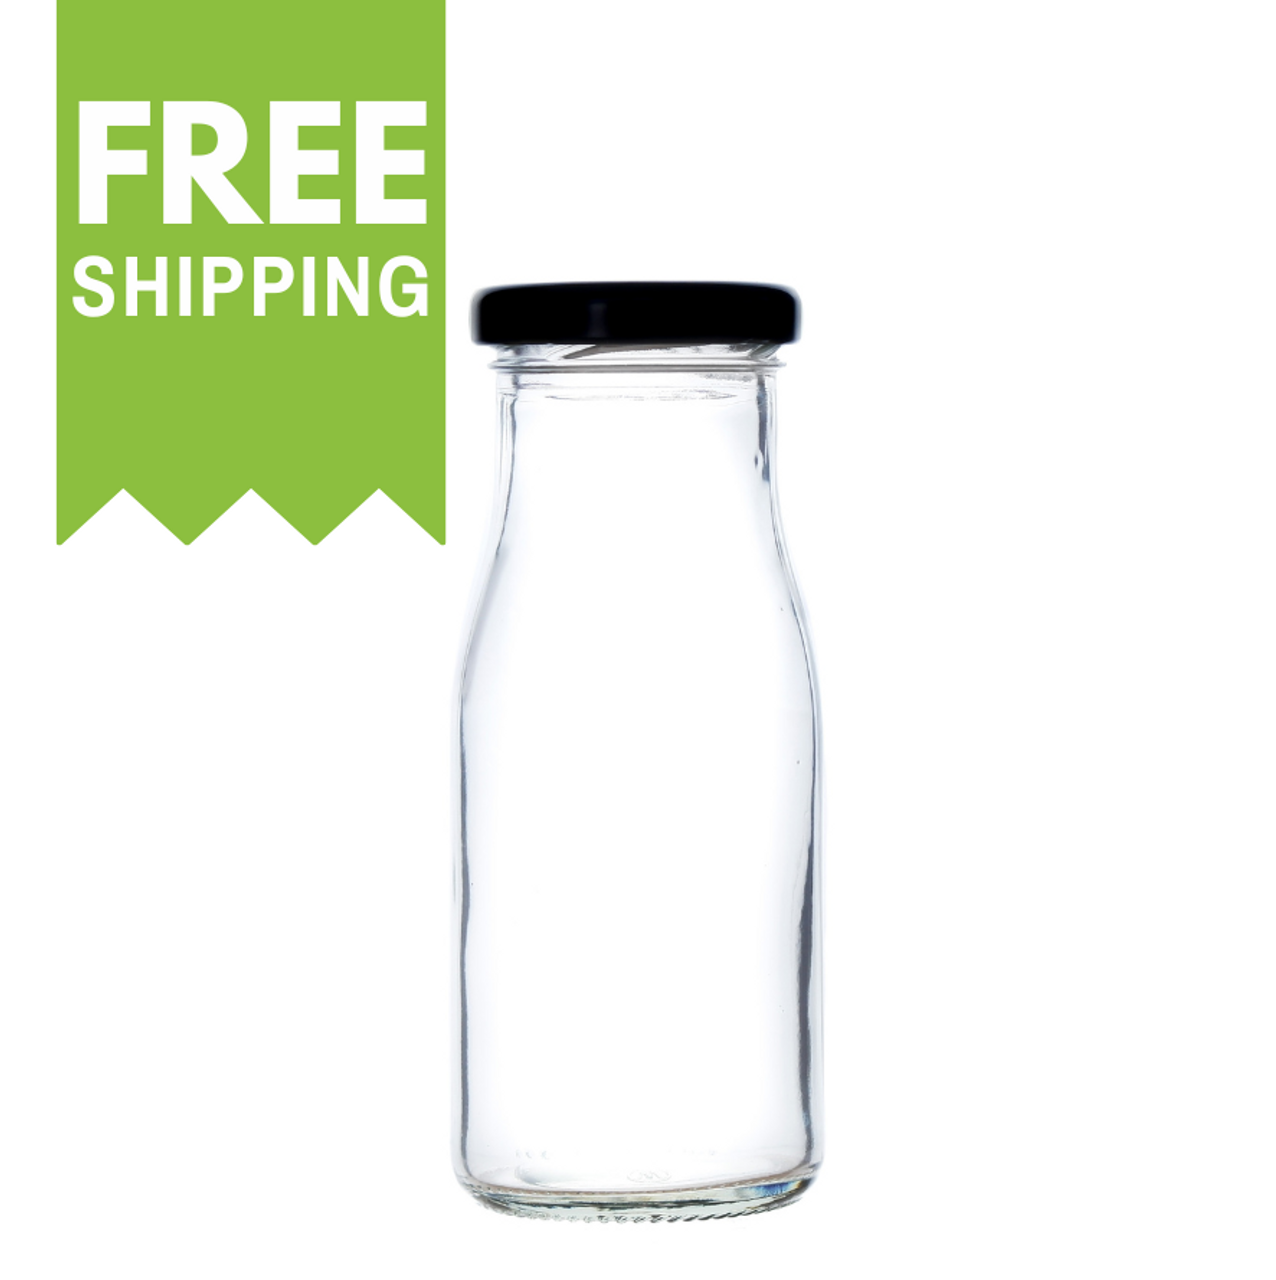 Acopa 14 oz. Embossed Glass Milk Bottle - 12/Case